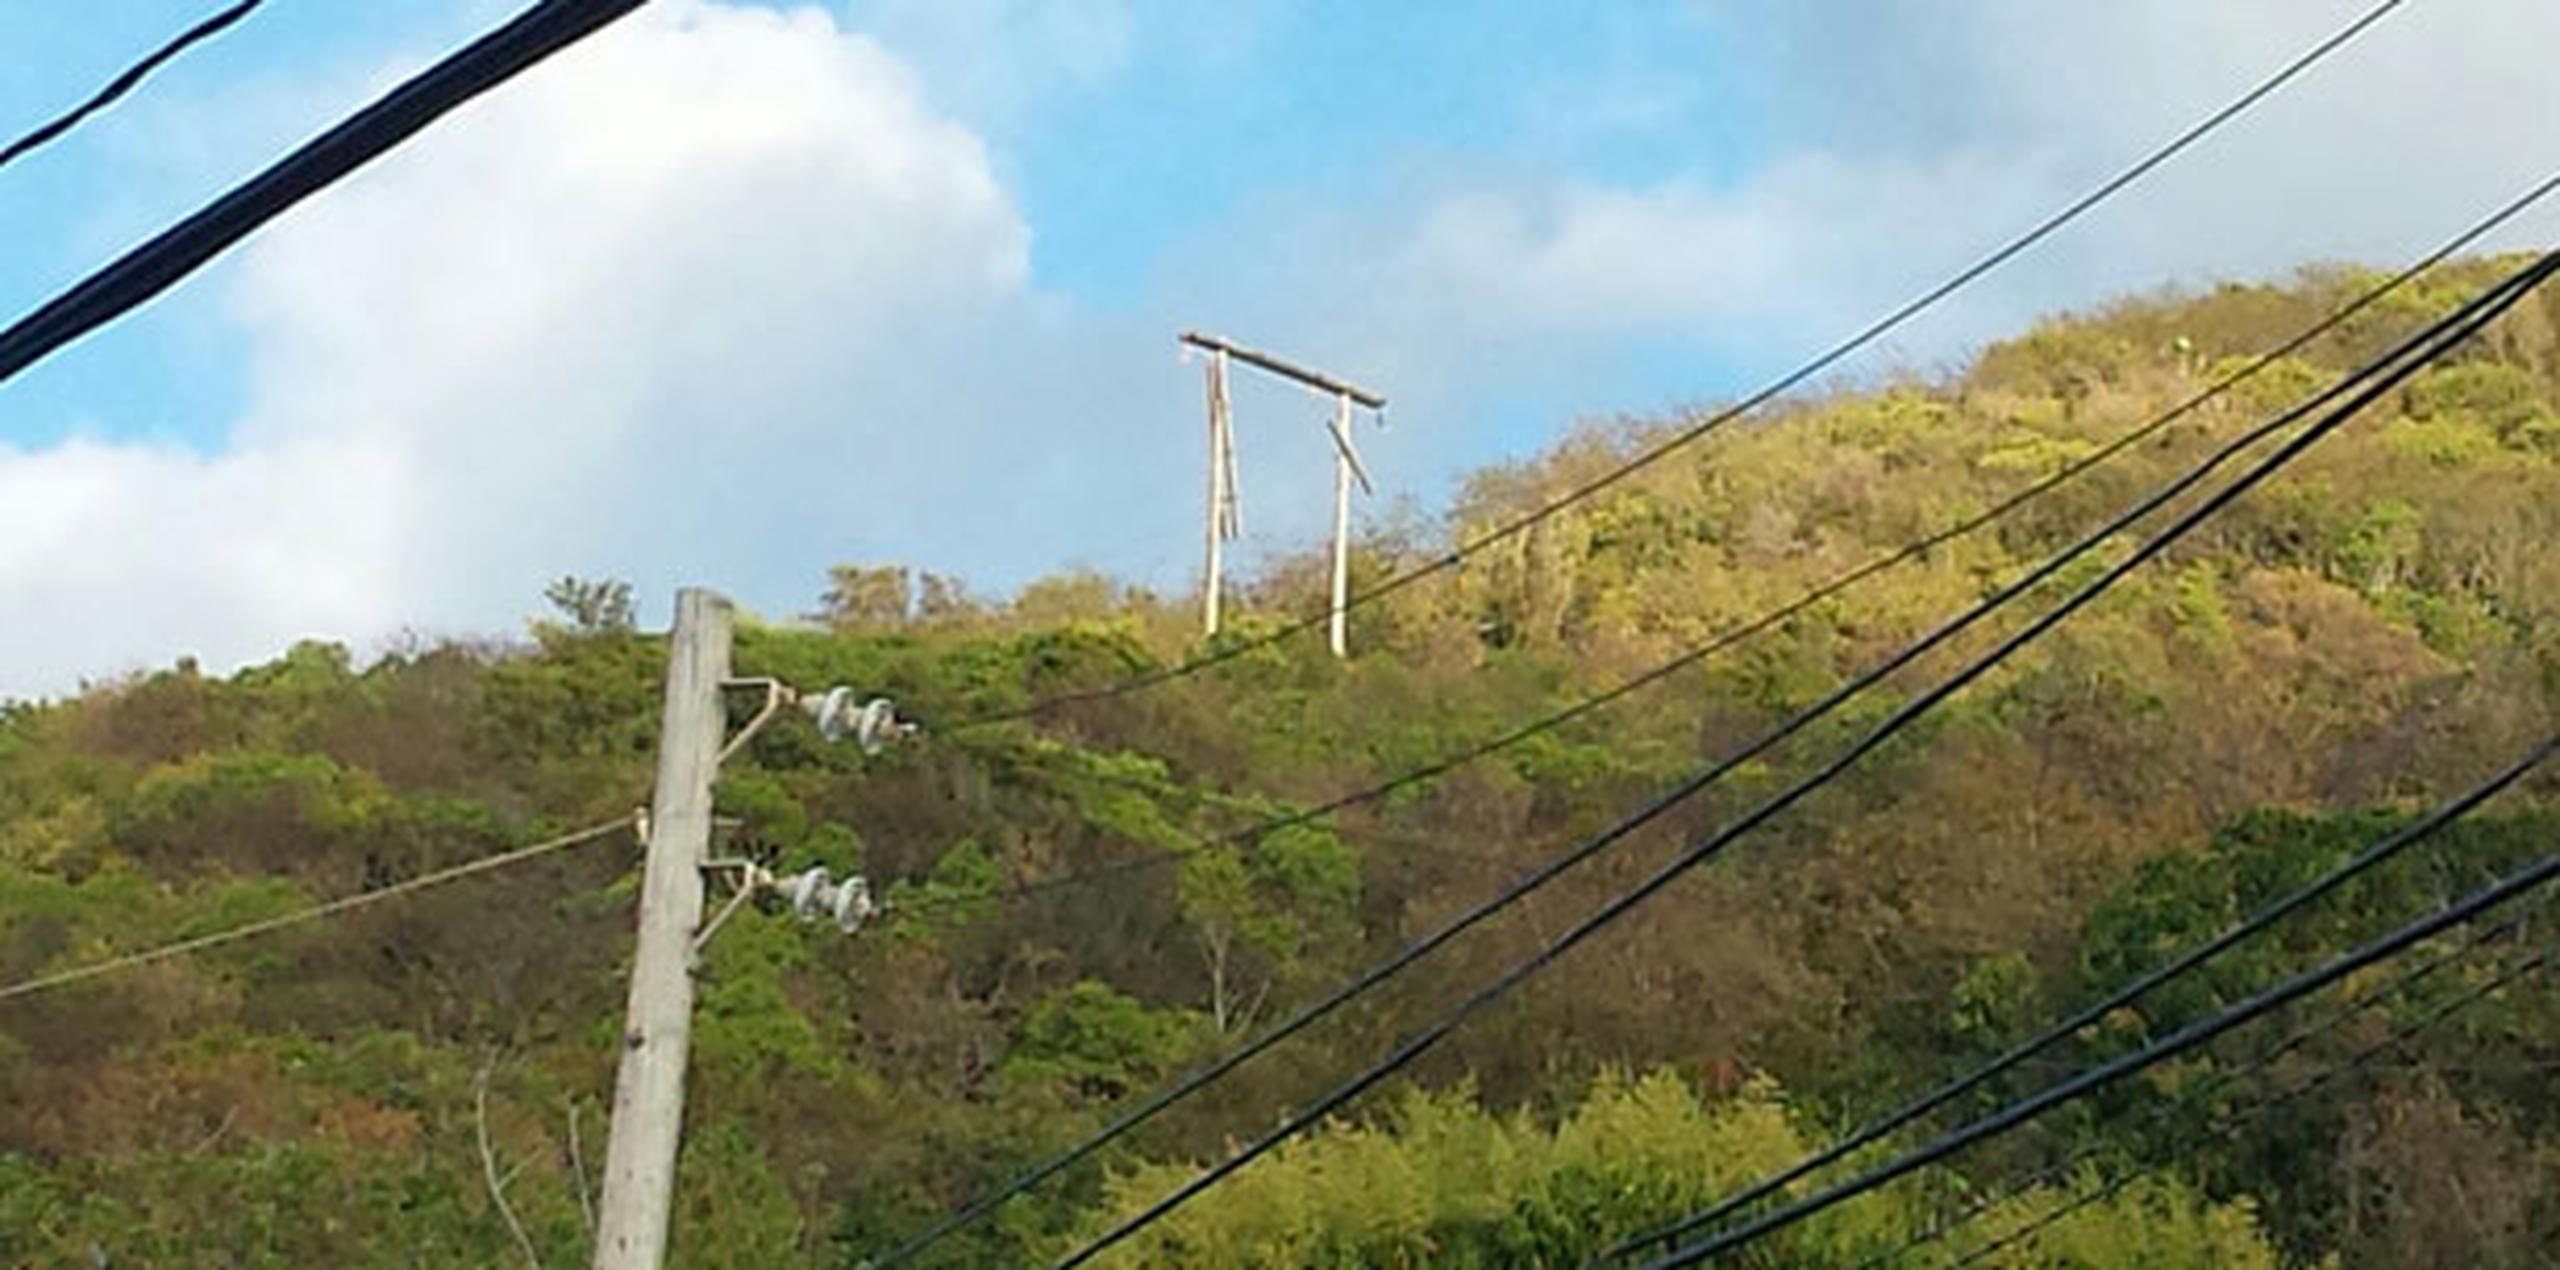 El director ejecutivo de la Autoridad de Energía Eléctrica (AEE), Juan F. Alicea Flores, confirmó que se registró una avería en una línea de 38 mil voltios entre los municipios de Maunabo y Guayama. (Suministrada)